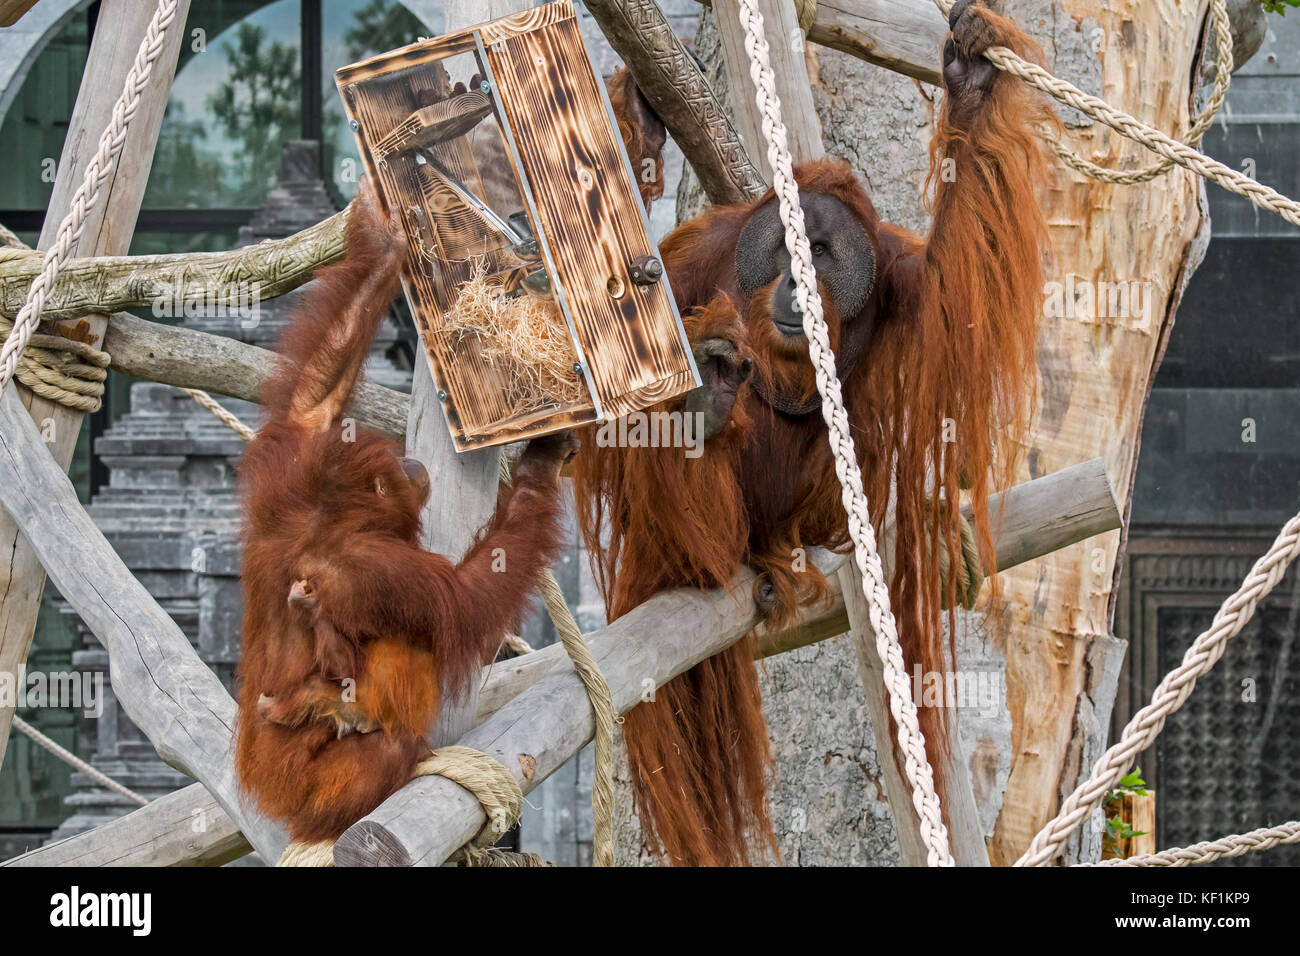 Orangutan di Sumatran / orang-utan (Pongo abelii) maschio e femmina con il bambino che mangia noci dal dispositivo di alimentazione in zoo / giardino zoologico Foto Stock